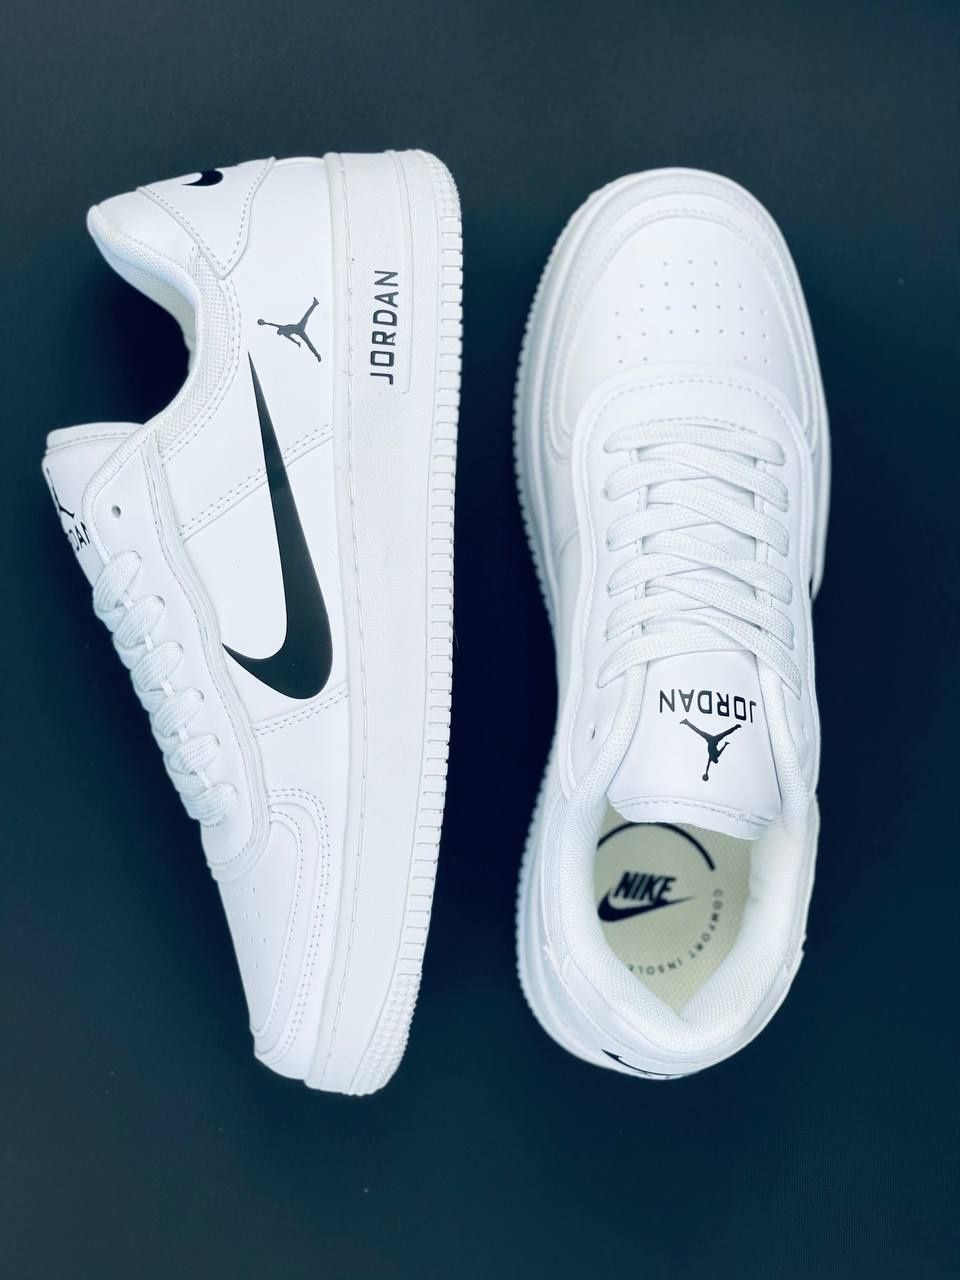 Мужские Кроссовки Nike Jordan Белые Кожаные Кросовки Найк Джордан